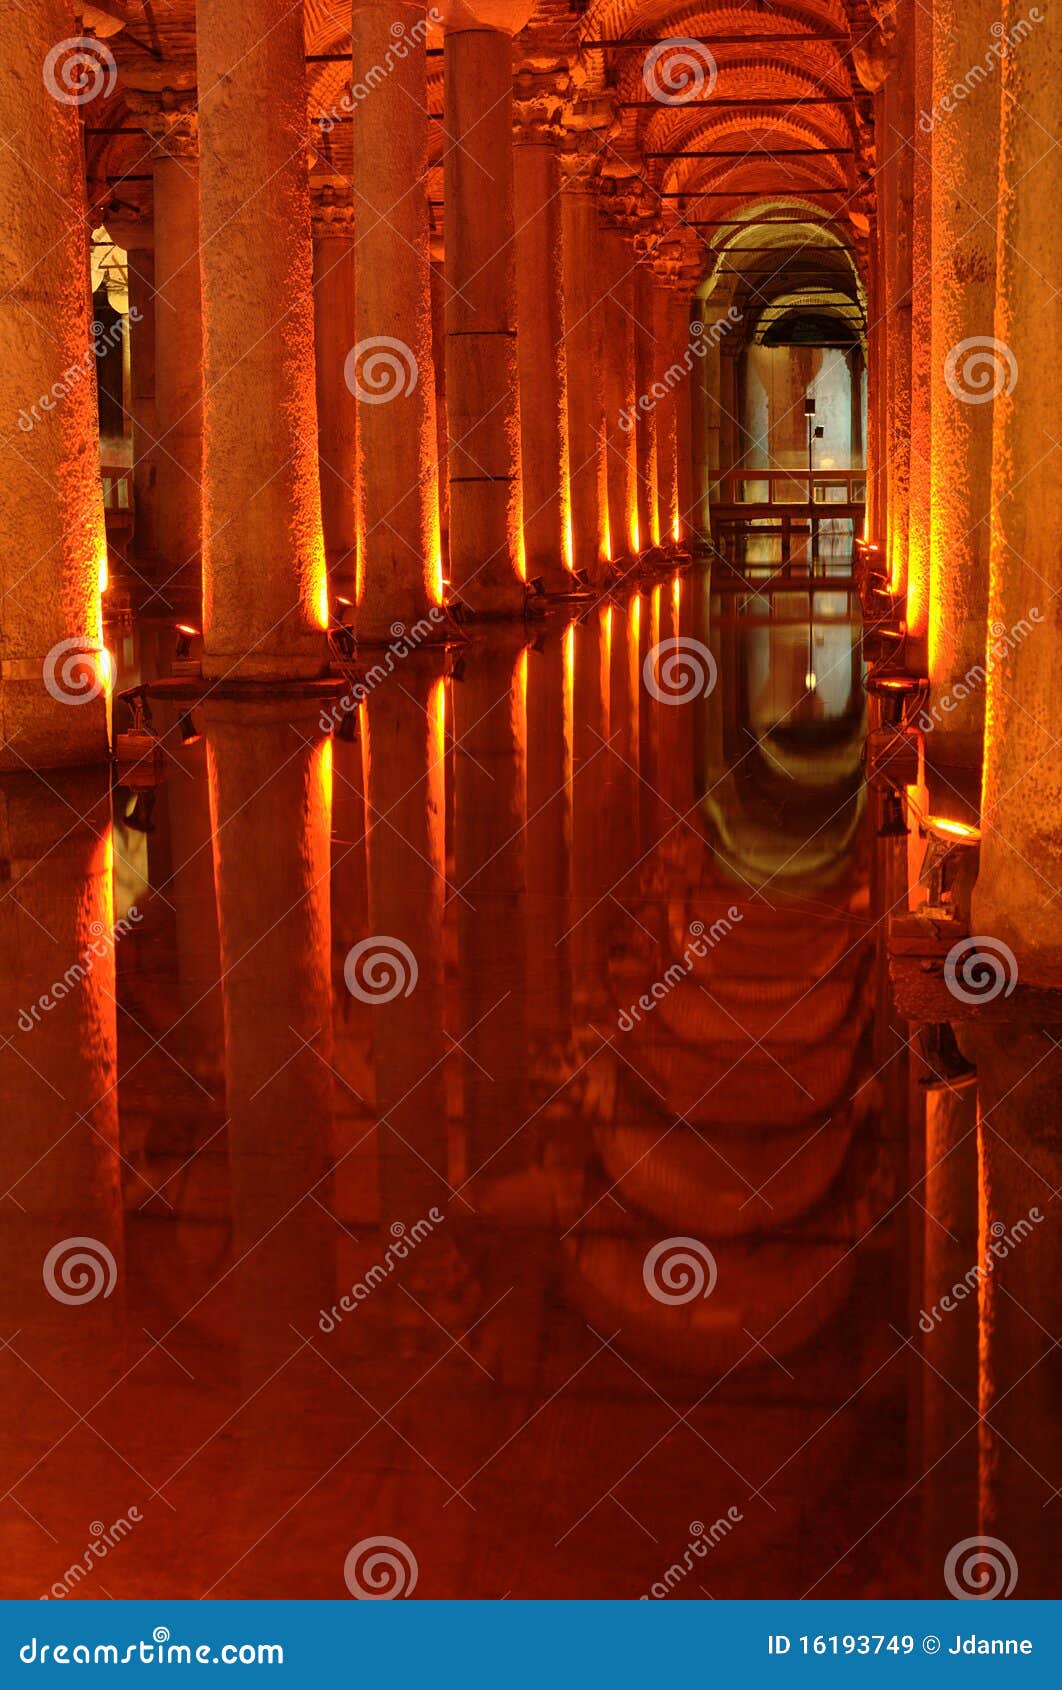 istanbul, basilica cistern